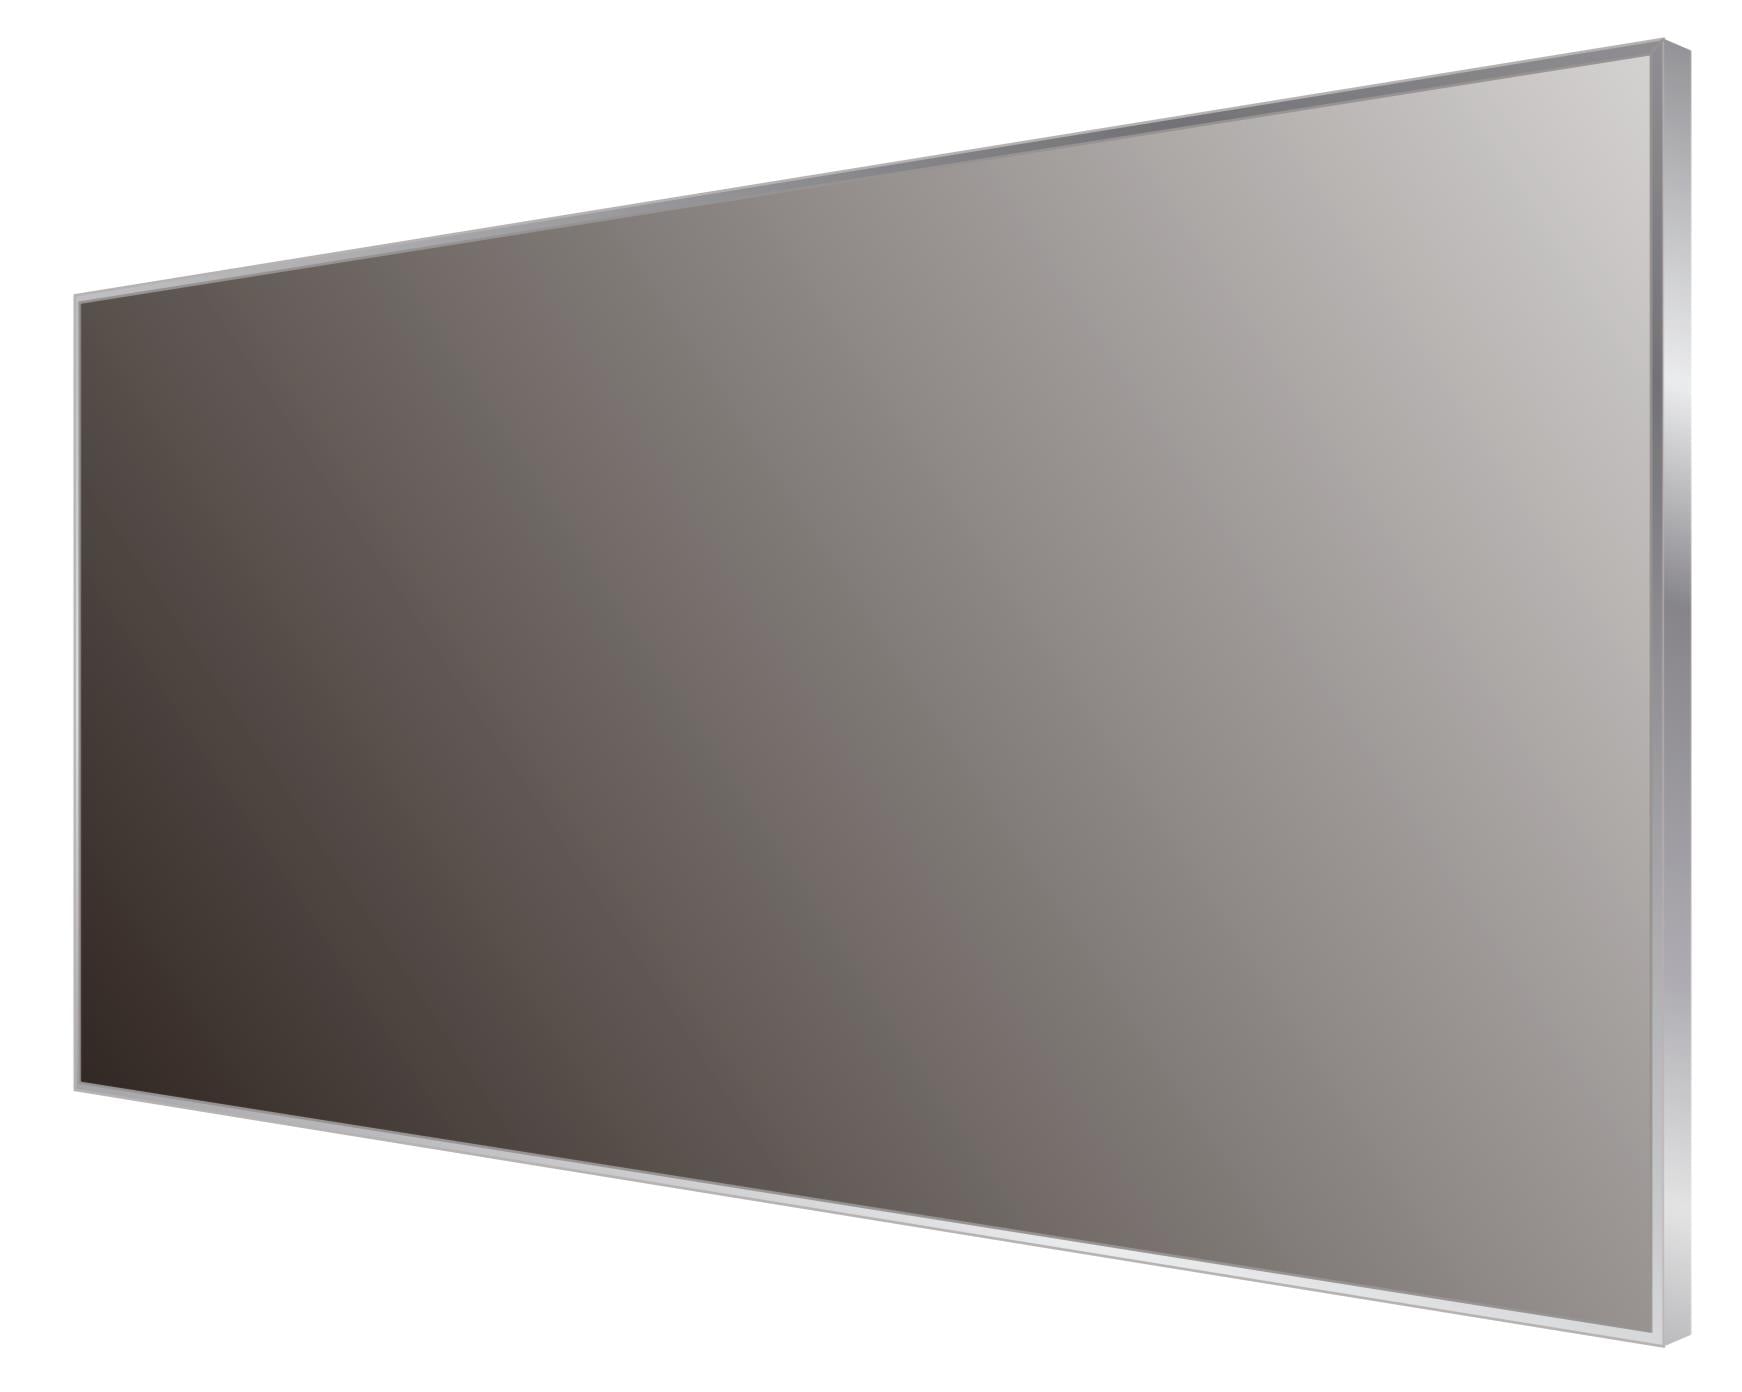 DAX Aluminum Framed Bathroom Vanity Mirror, 55-1/8 x 19-11/16 x 8-1/4 Inches (DAX-AF14050)